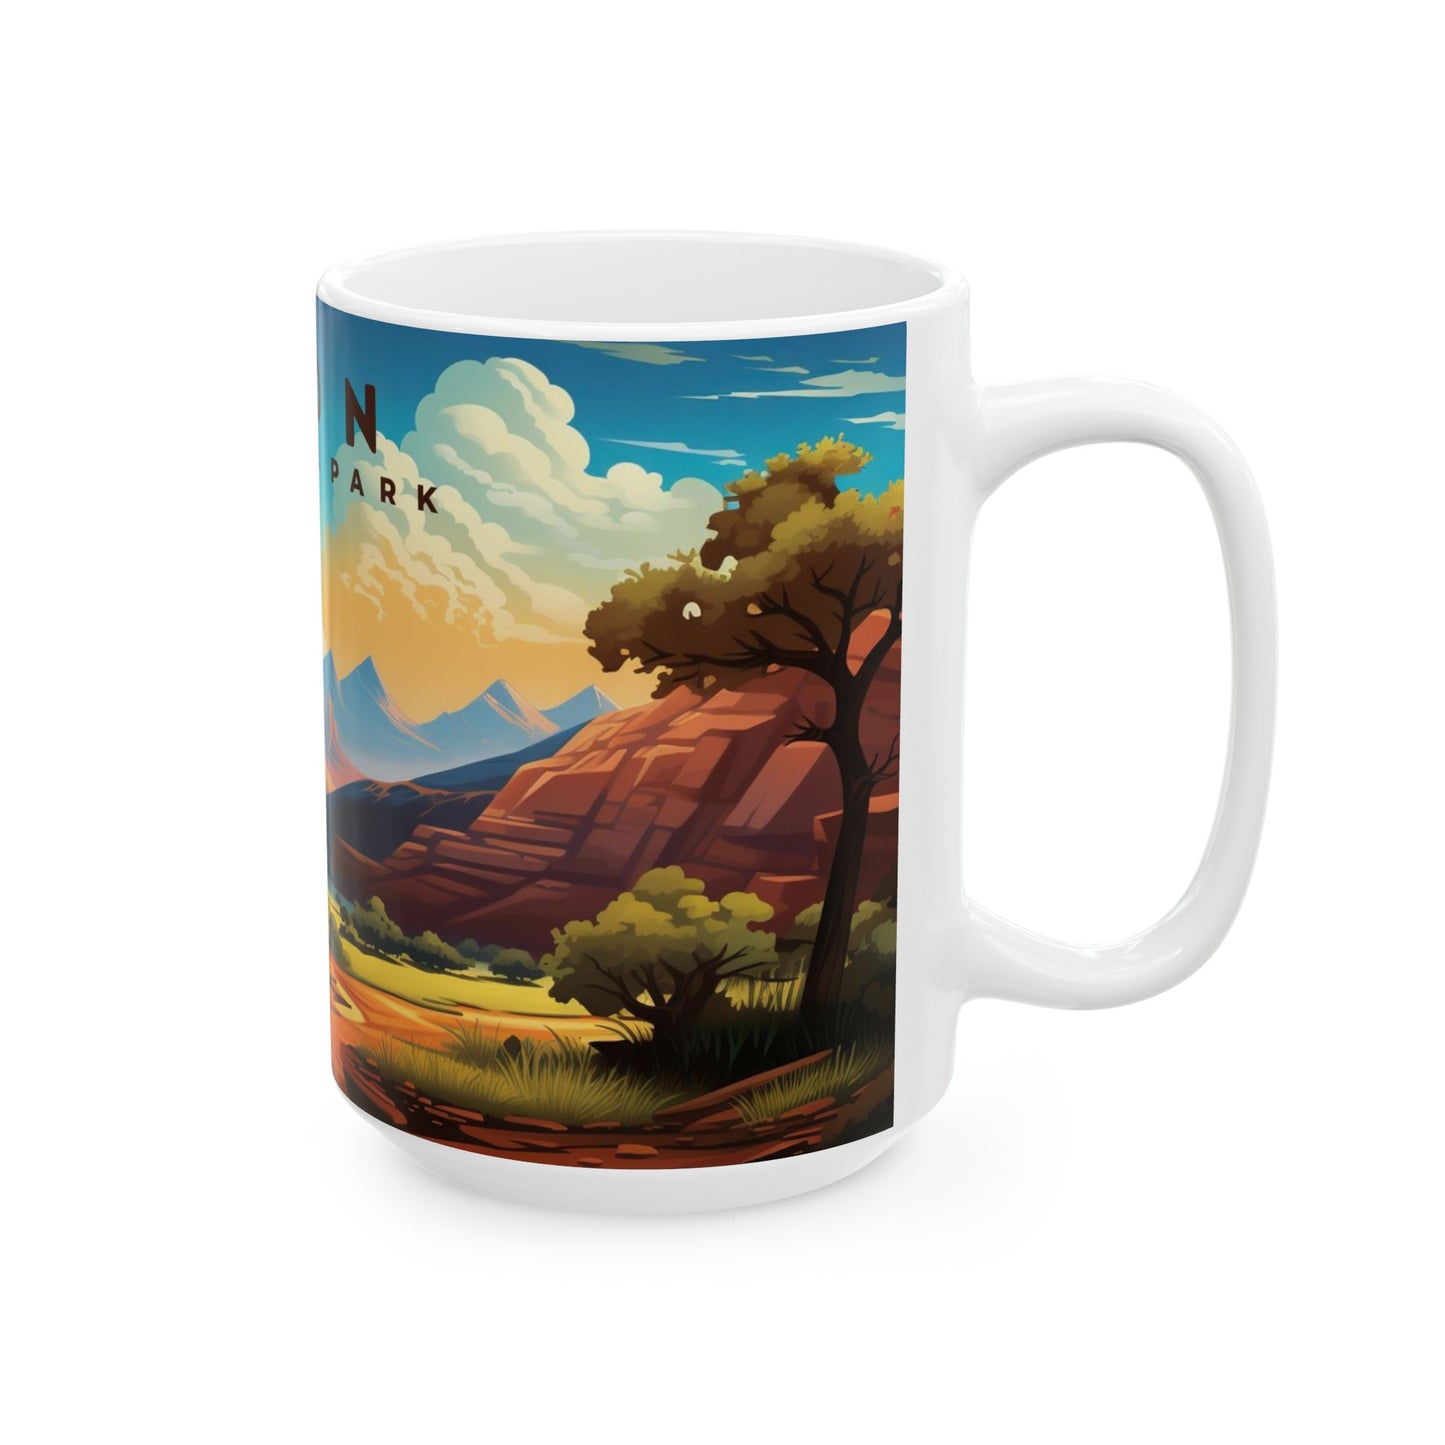 Zion National Park Mug | White Ceramic Mug (11oz, 15oz)